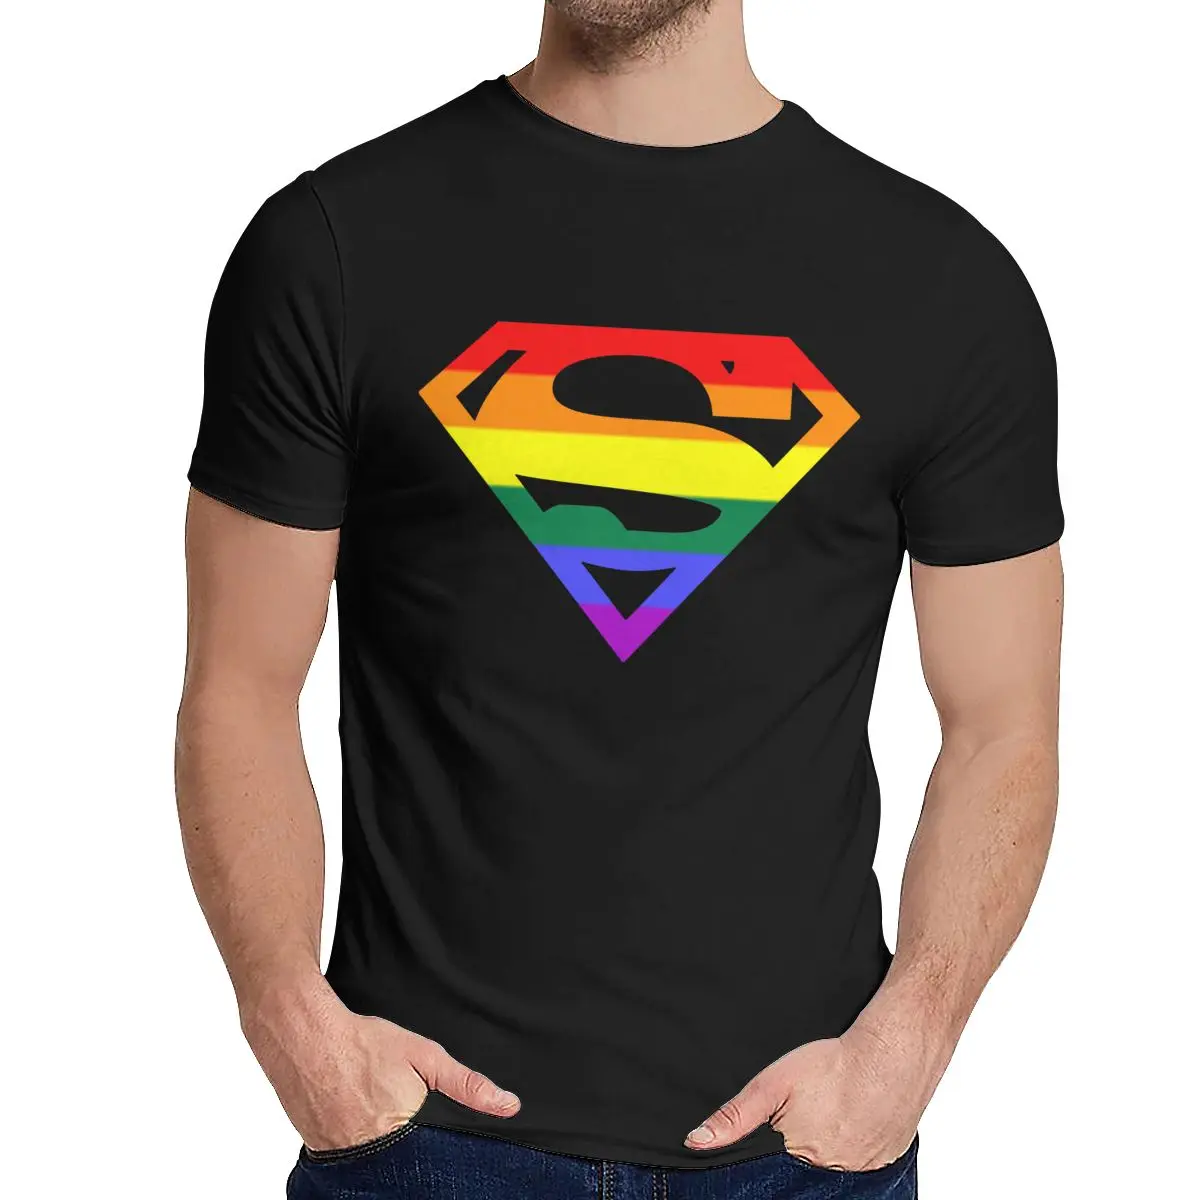 Мужская футболка супер квир Радуга, гей, LGBTQ LGBT хороший хлопок уникальный дизайн Crewneck ретро короткий рукав - Цвет: Черный